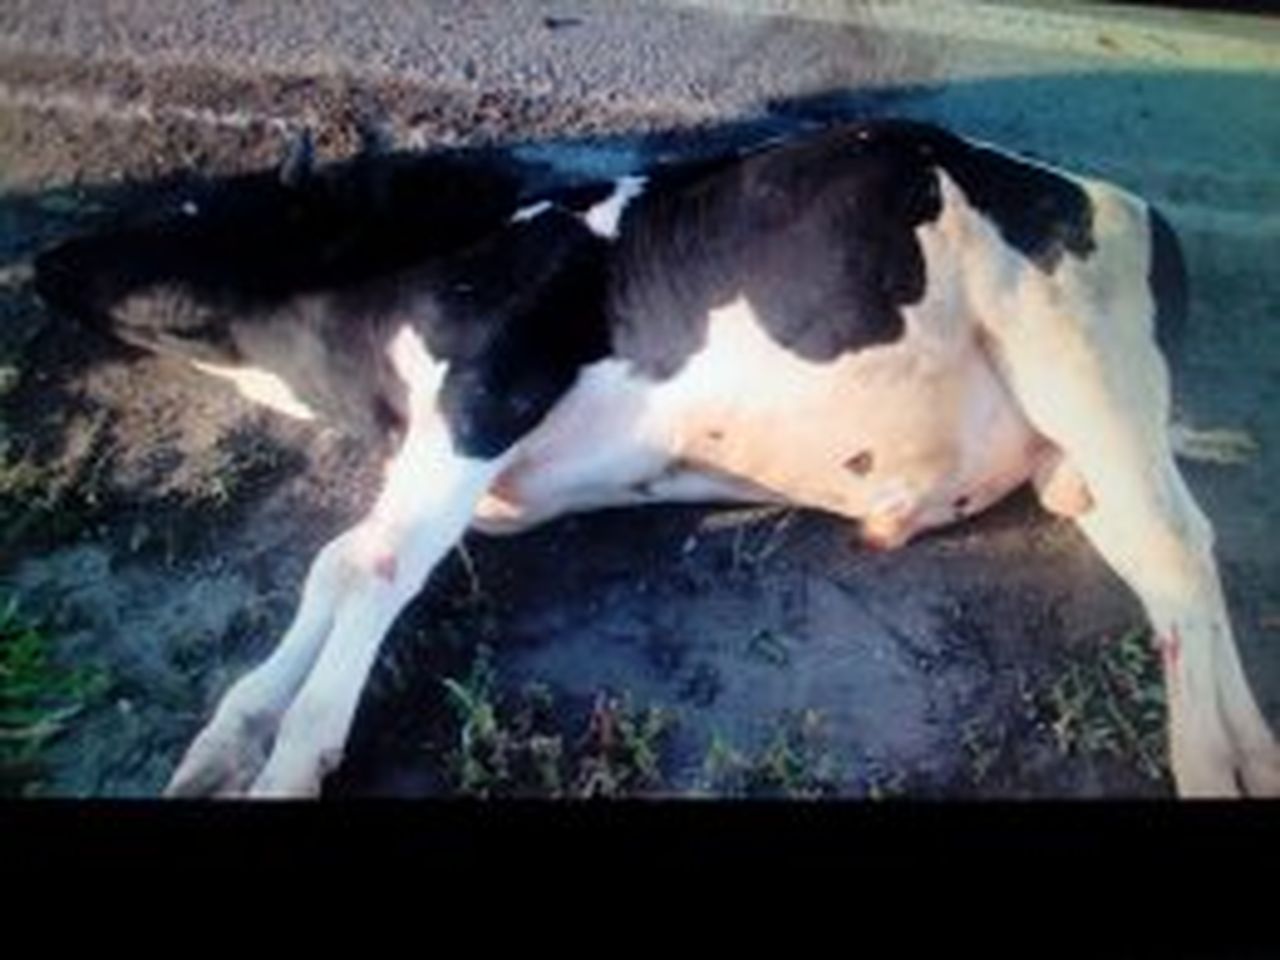 ГИБДД Серова разыскивает хозяина коровы, пострадавшей в ДТП